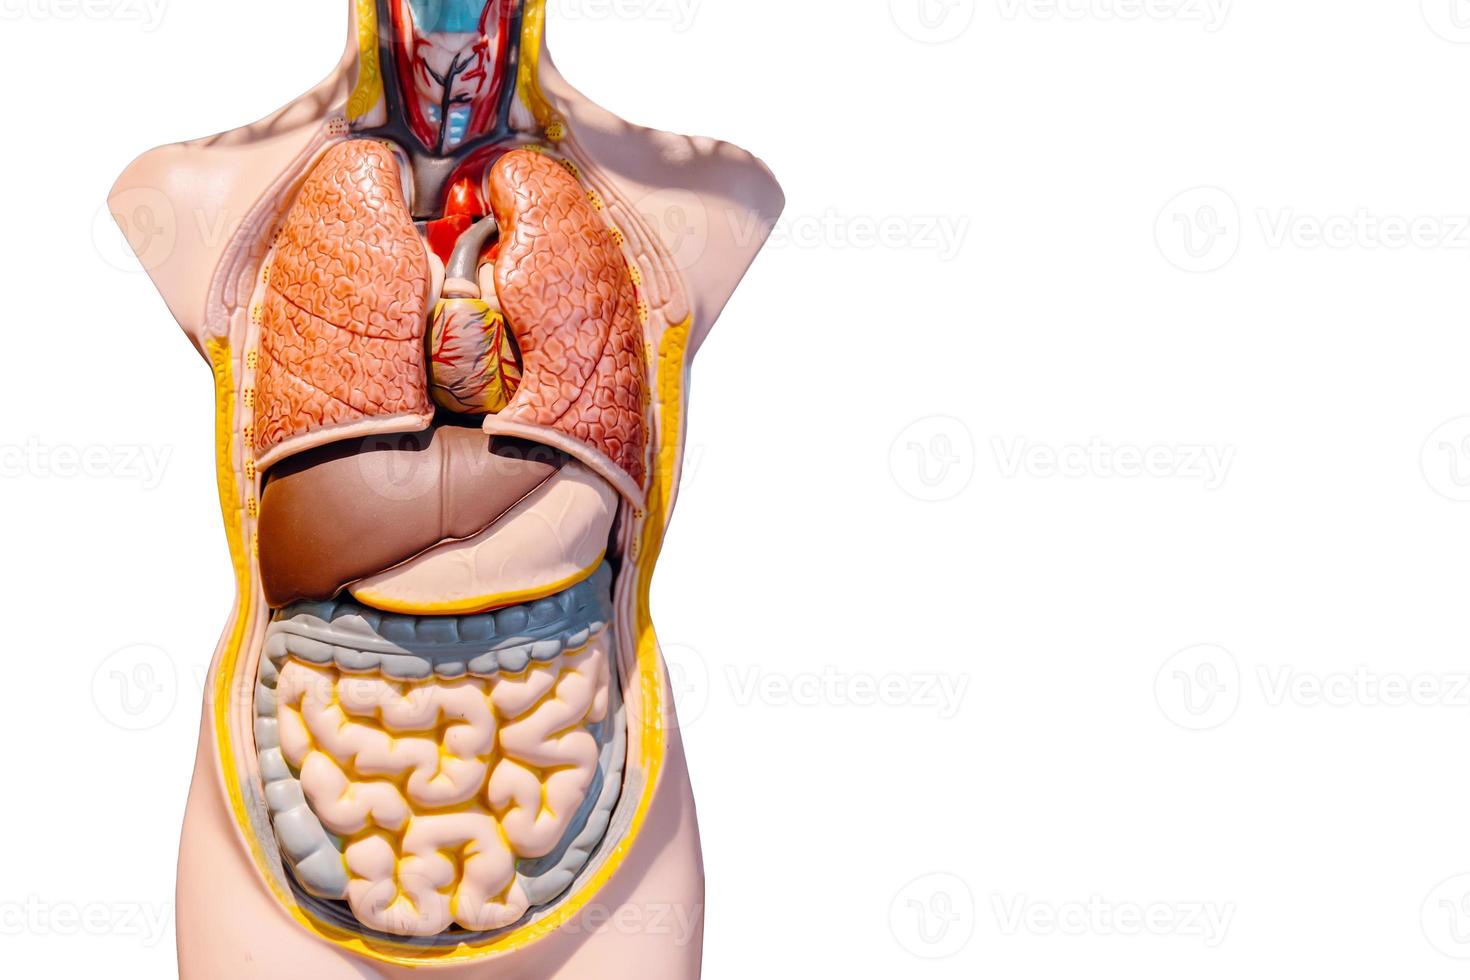 órgão interno humano do modelo de figura do intestino do intestino abdominal isolado no fundo branco foto